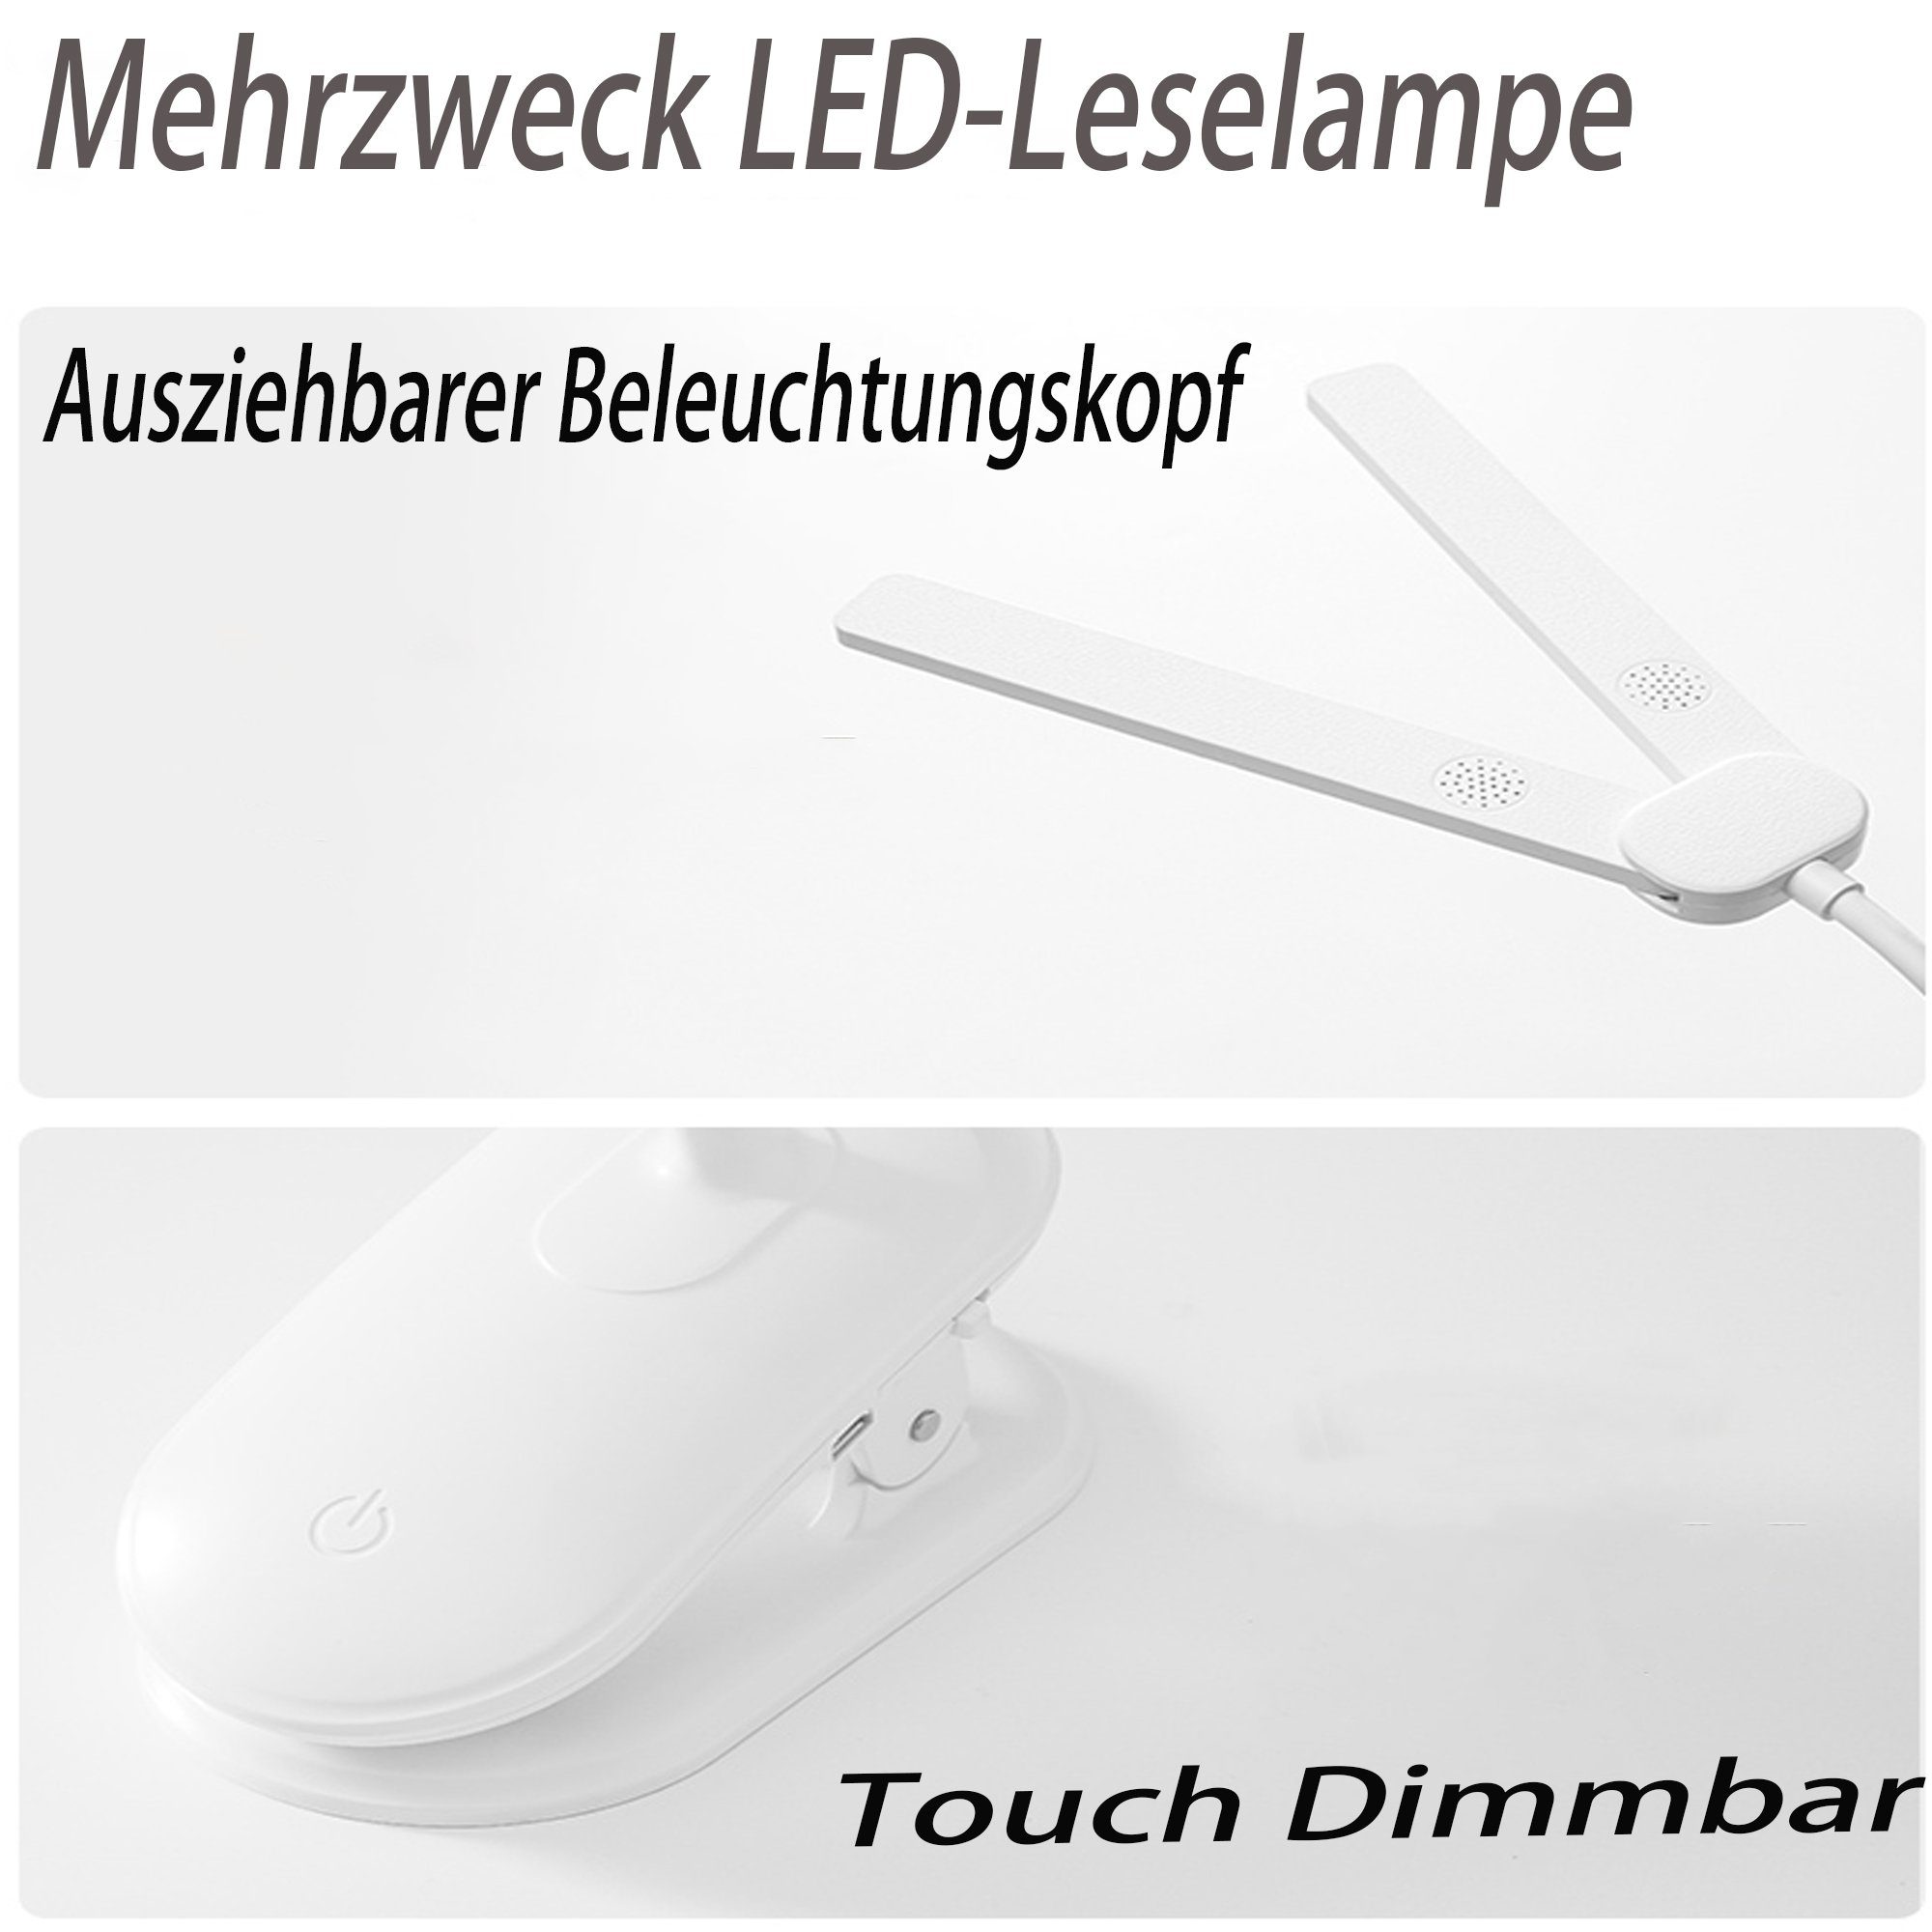 Control, USB LED Bett Mutoy Nachttischlampe LED Wiederaufladbare Leselampe für Arbeiten Klemmlampe Studieren Leselampe Leselampe, Touch mit